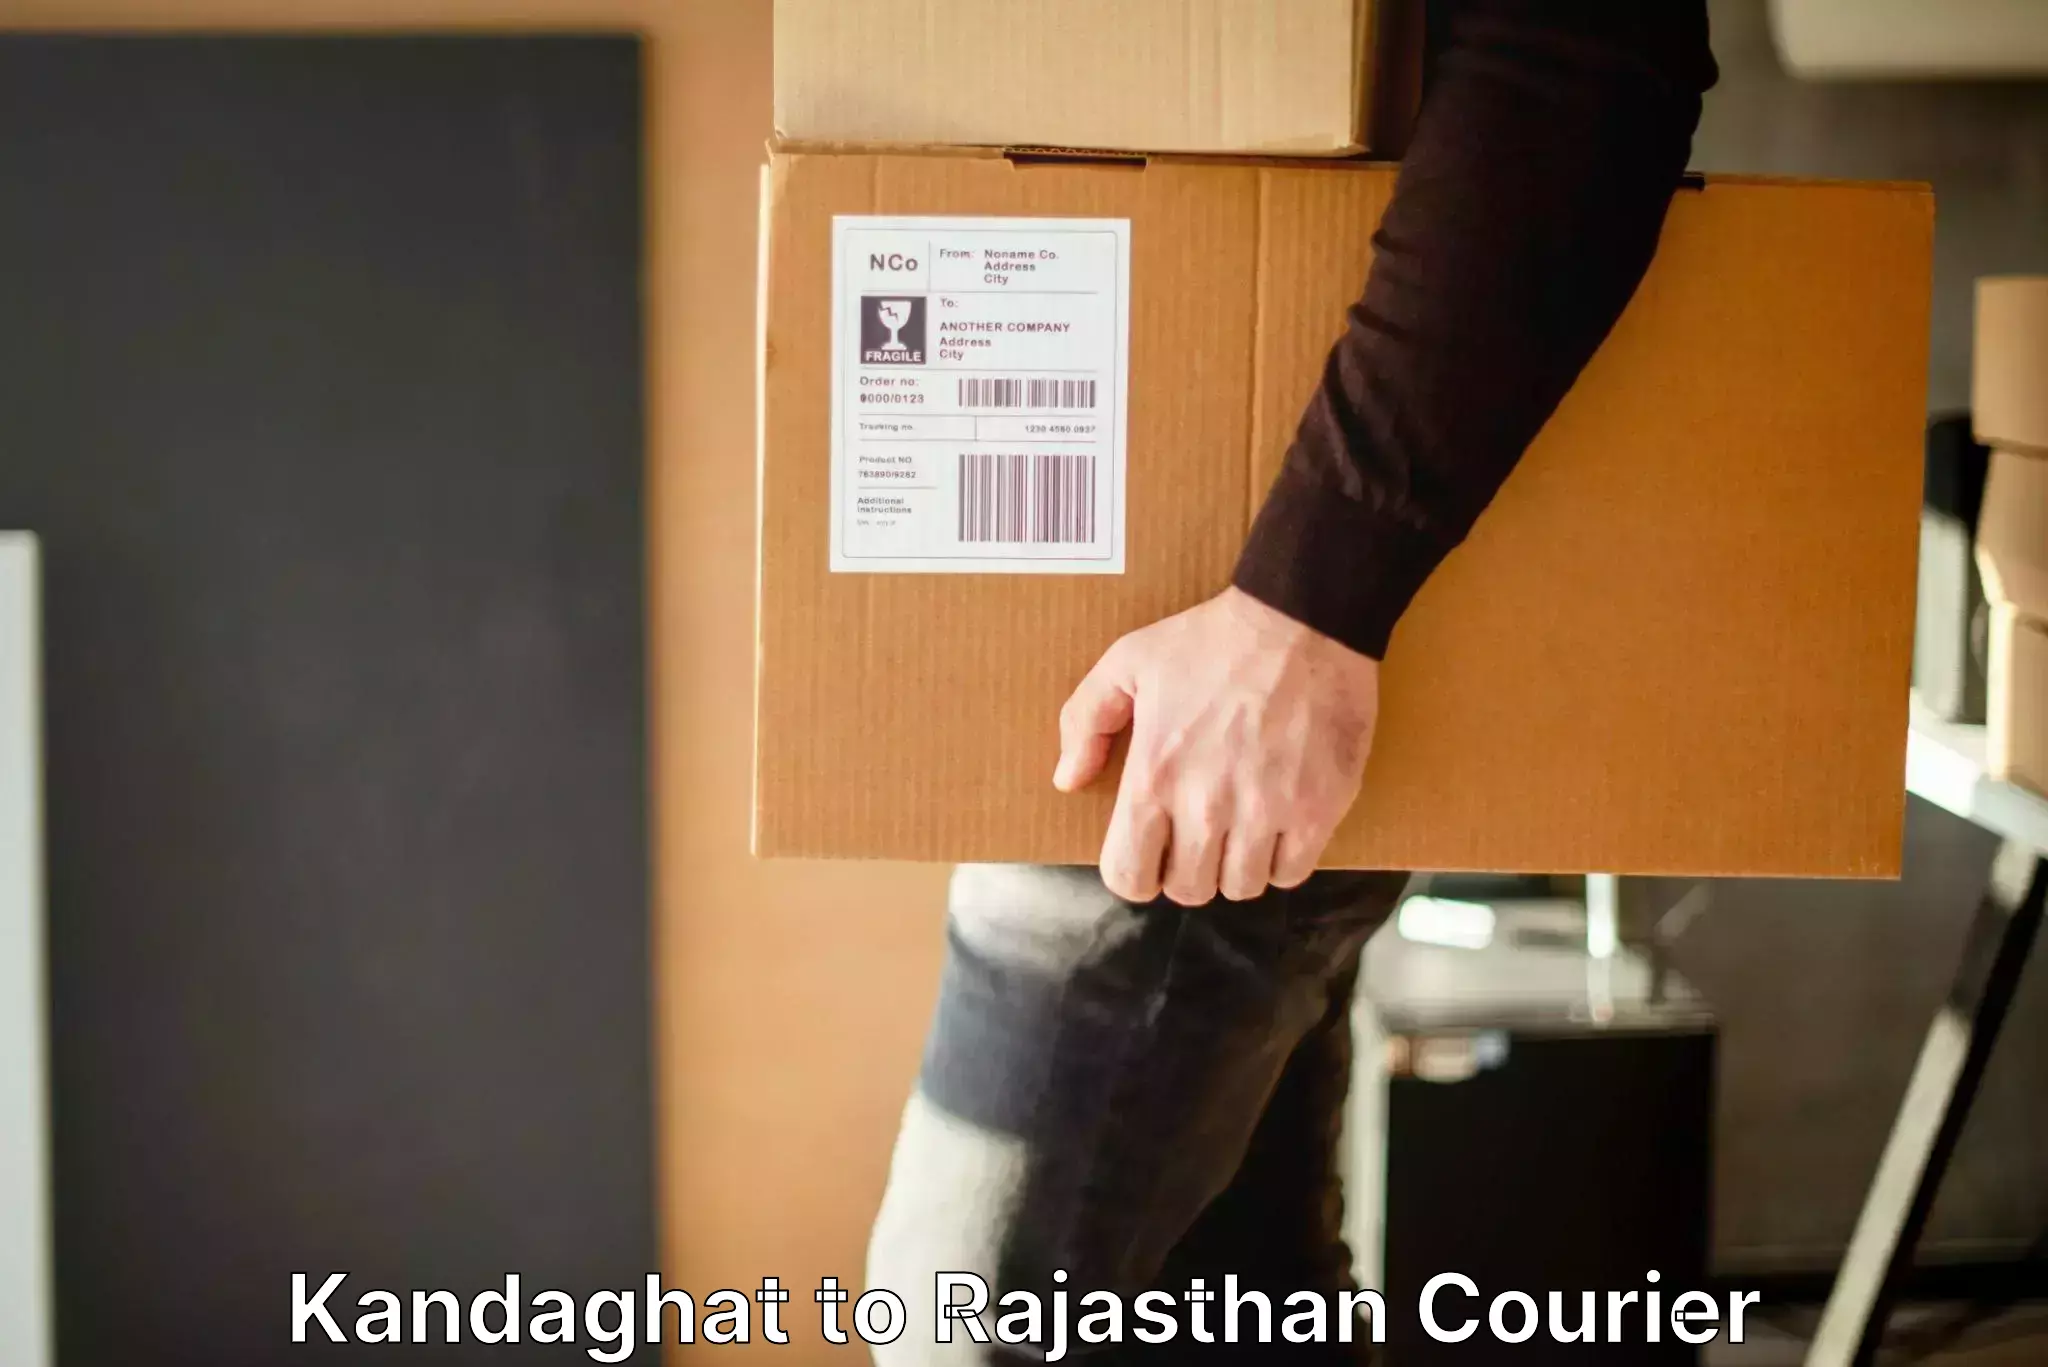 Luggage shipment tracking Kandaghat to Raila